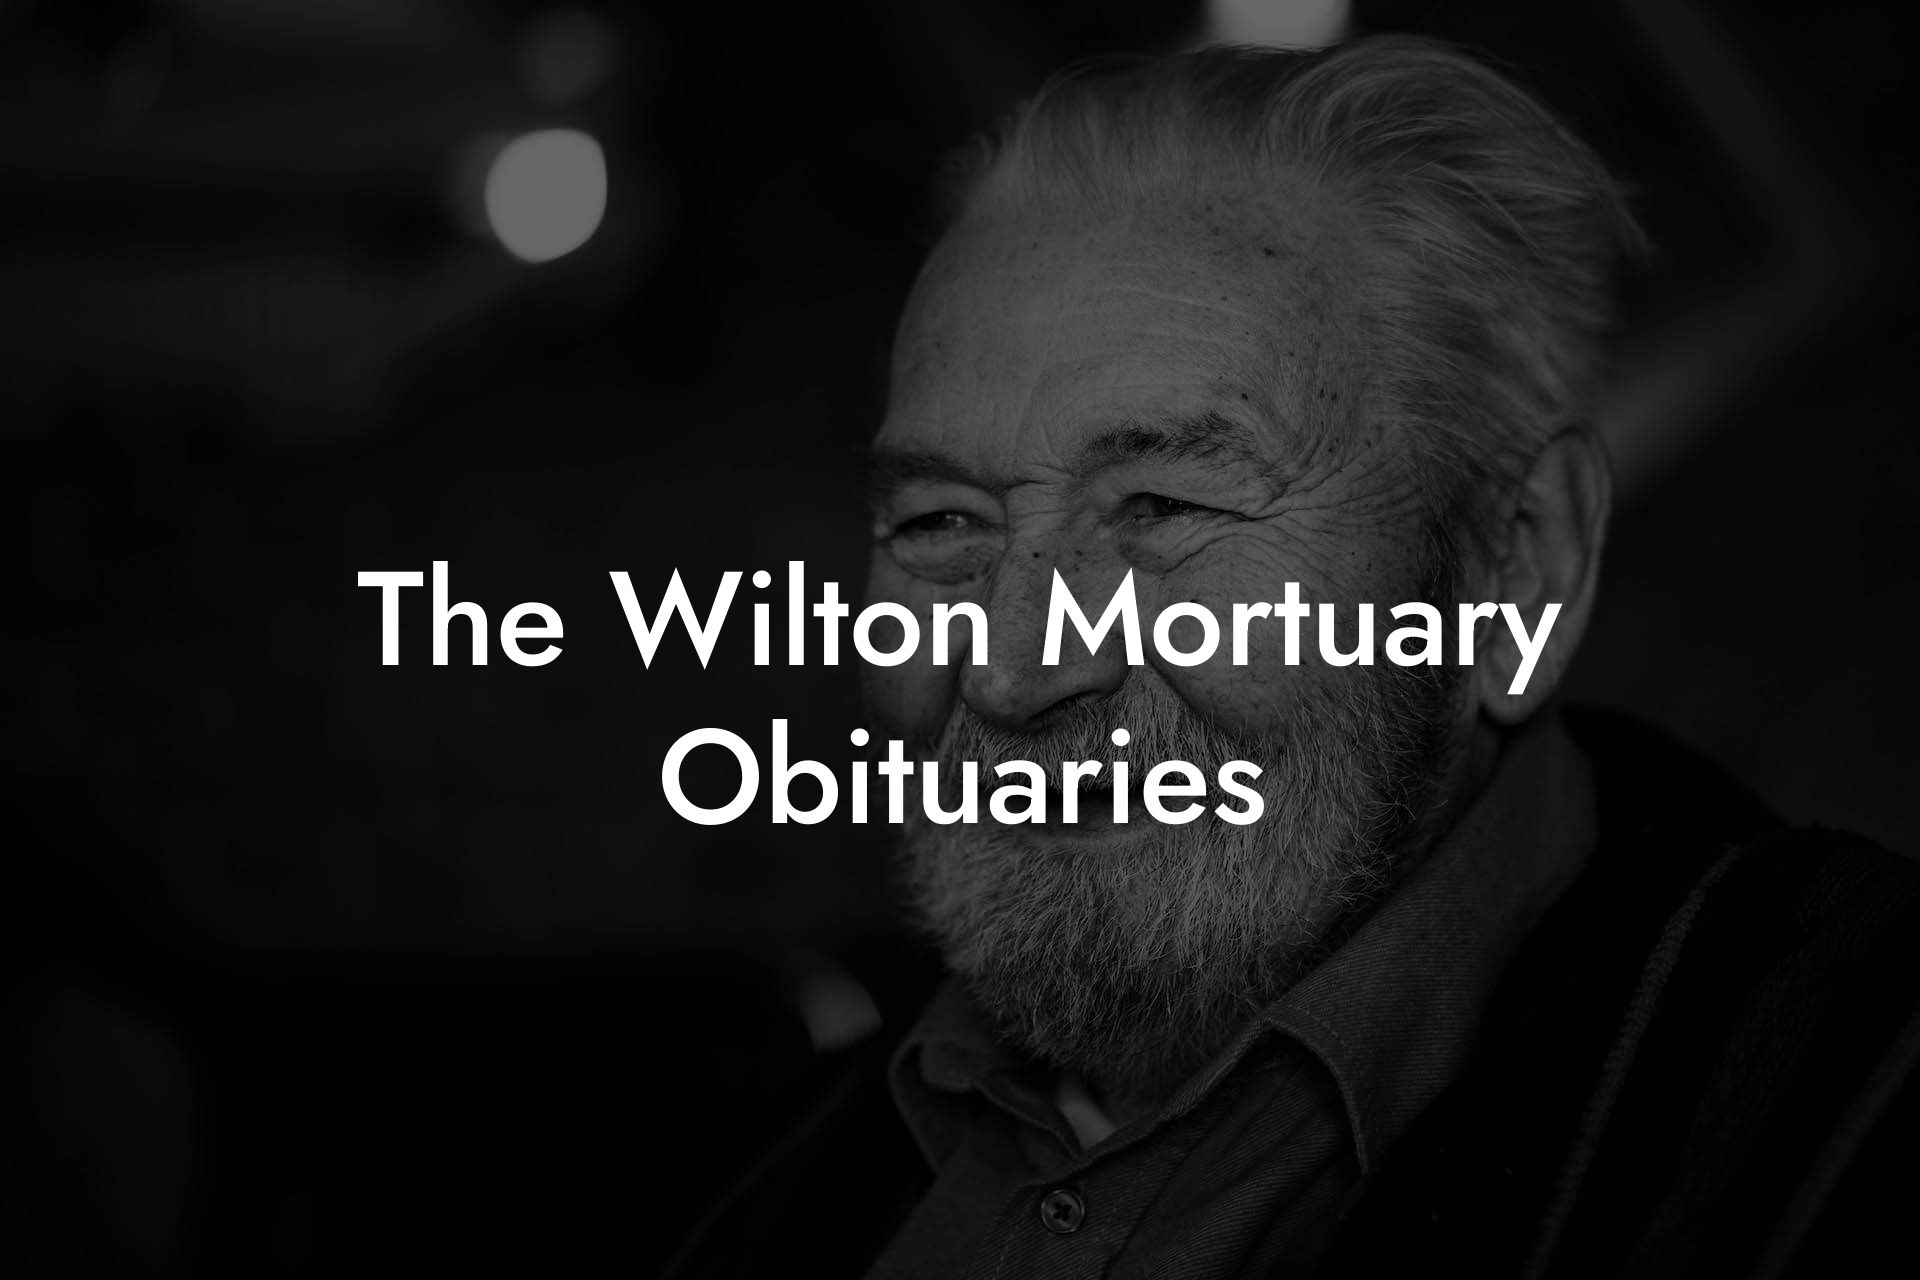 The Wilton Mortuary Obituaries